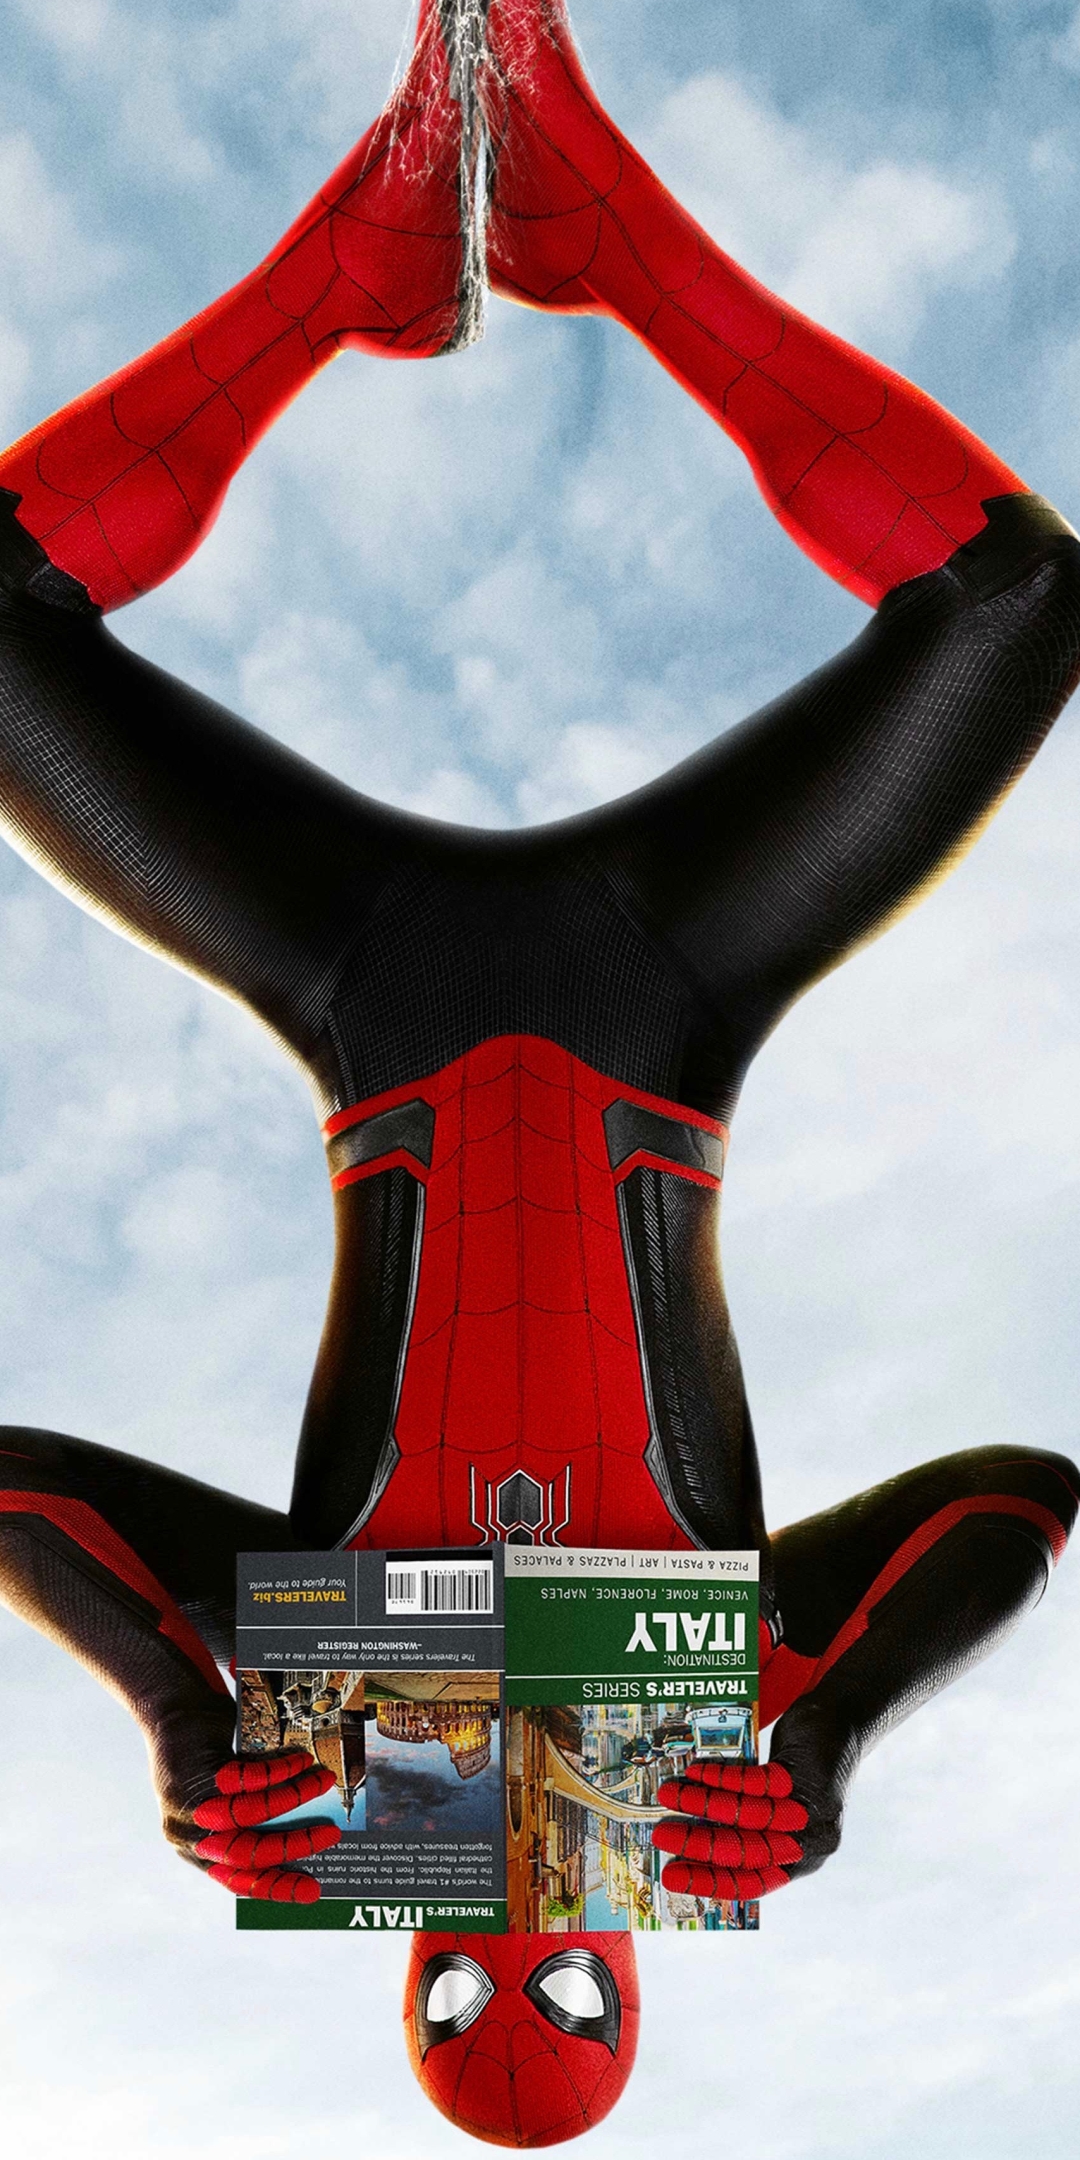 Descarga gratuita de fondo de pantalla para móvil de Películas, Hombre Araña, Spider Man, Spider Man: Lejos De Casa.